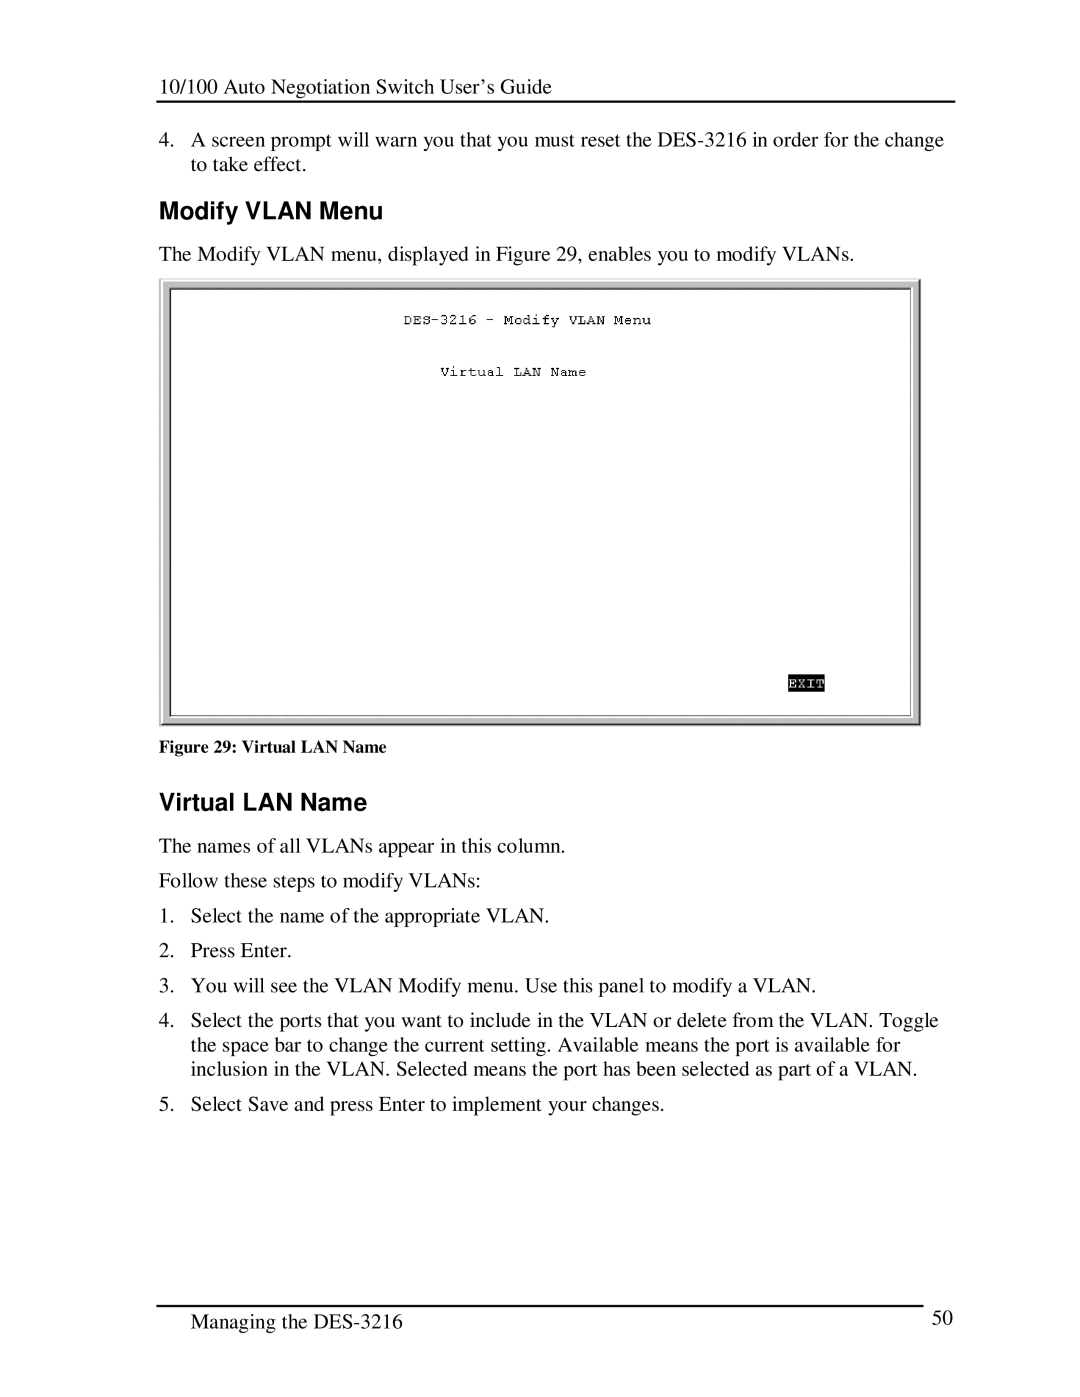 D-Link DES-3216 manual Modify Vlan Menu, Virtual LAN Name 